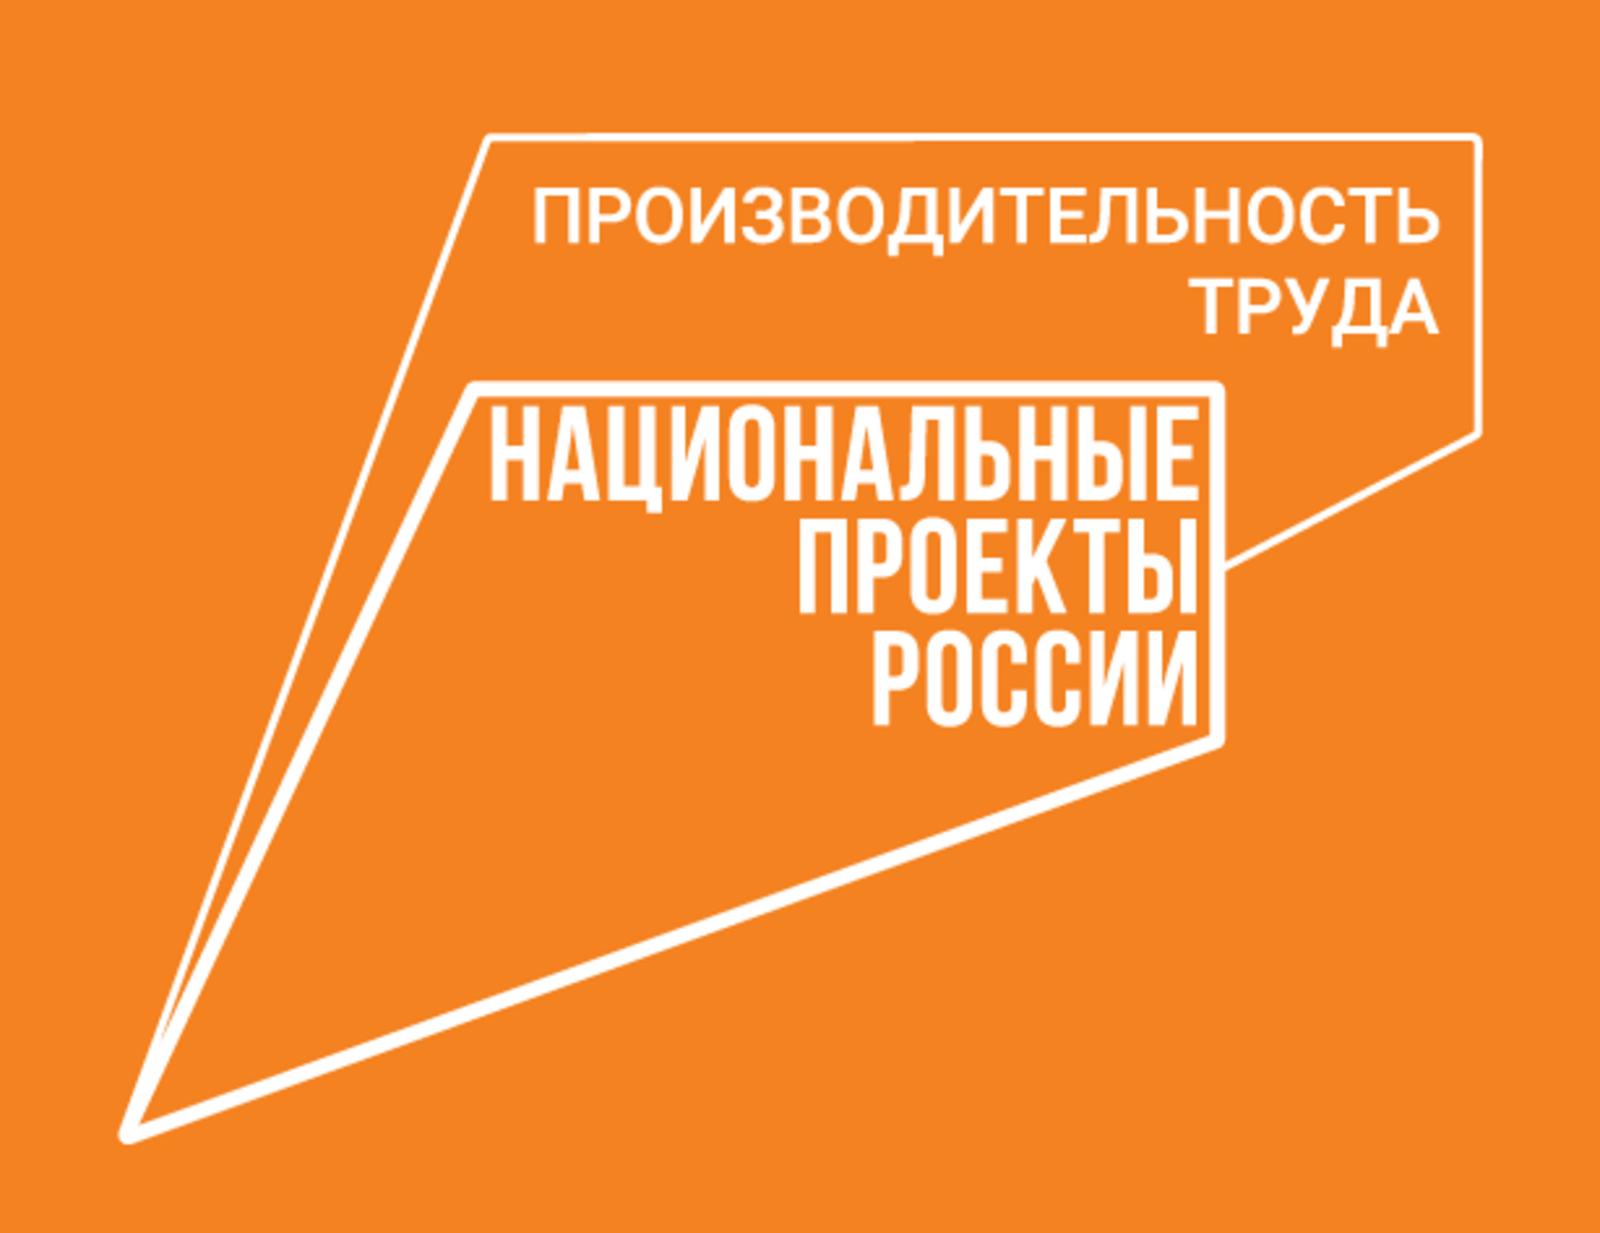 В Башкортостане на инвестсабантуе «Зауралье» состоится подписание соглашений с новыми участниками нацпроекта «Производительность труда»